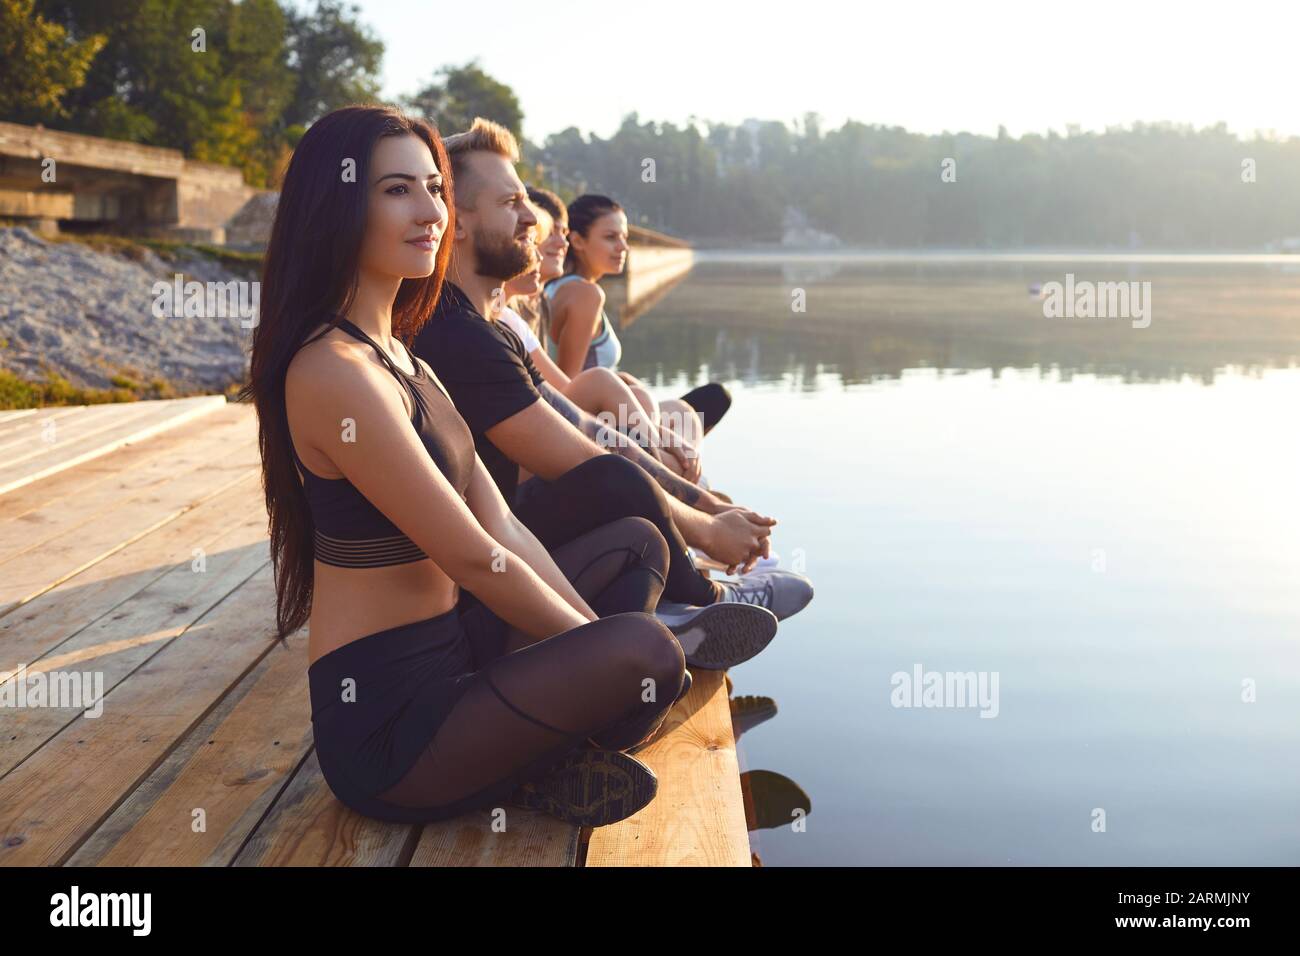 Grupo de personas relajarse descansando en el parque del lago Foto de stock